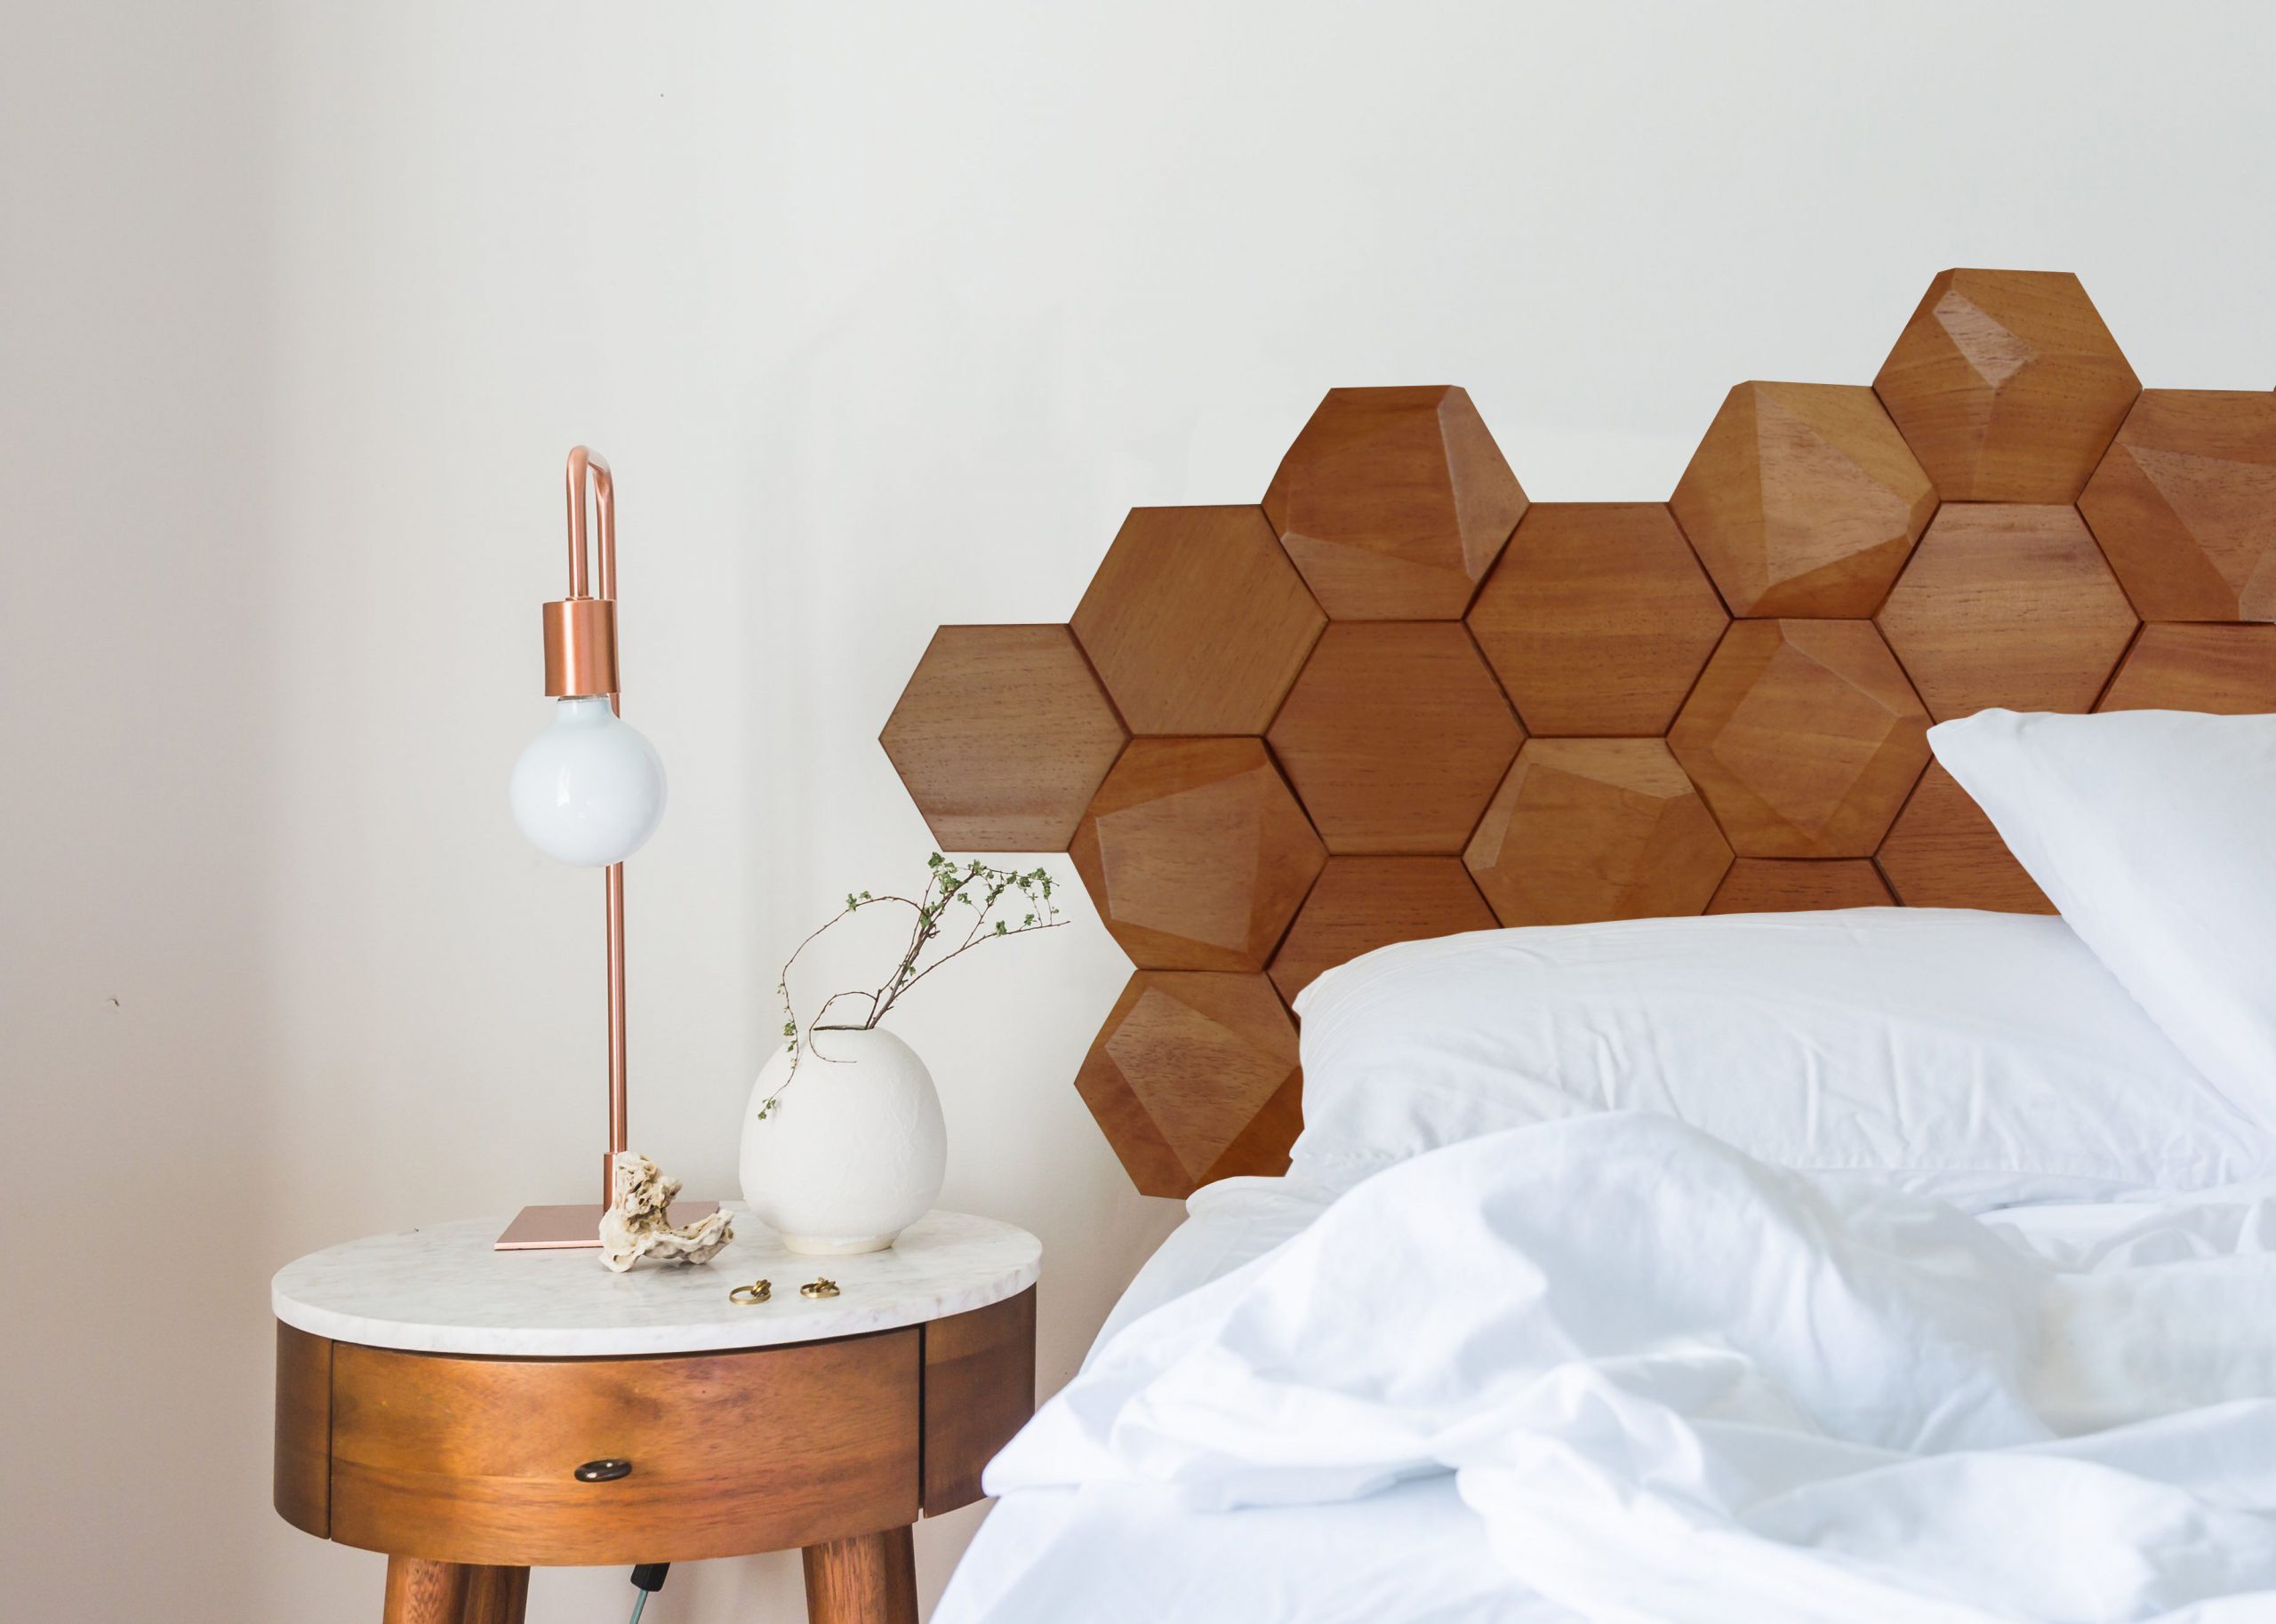 Stunning Hexagonal Wall Tiles